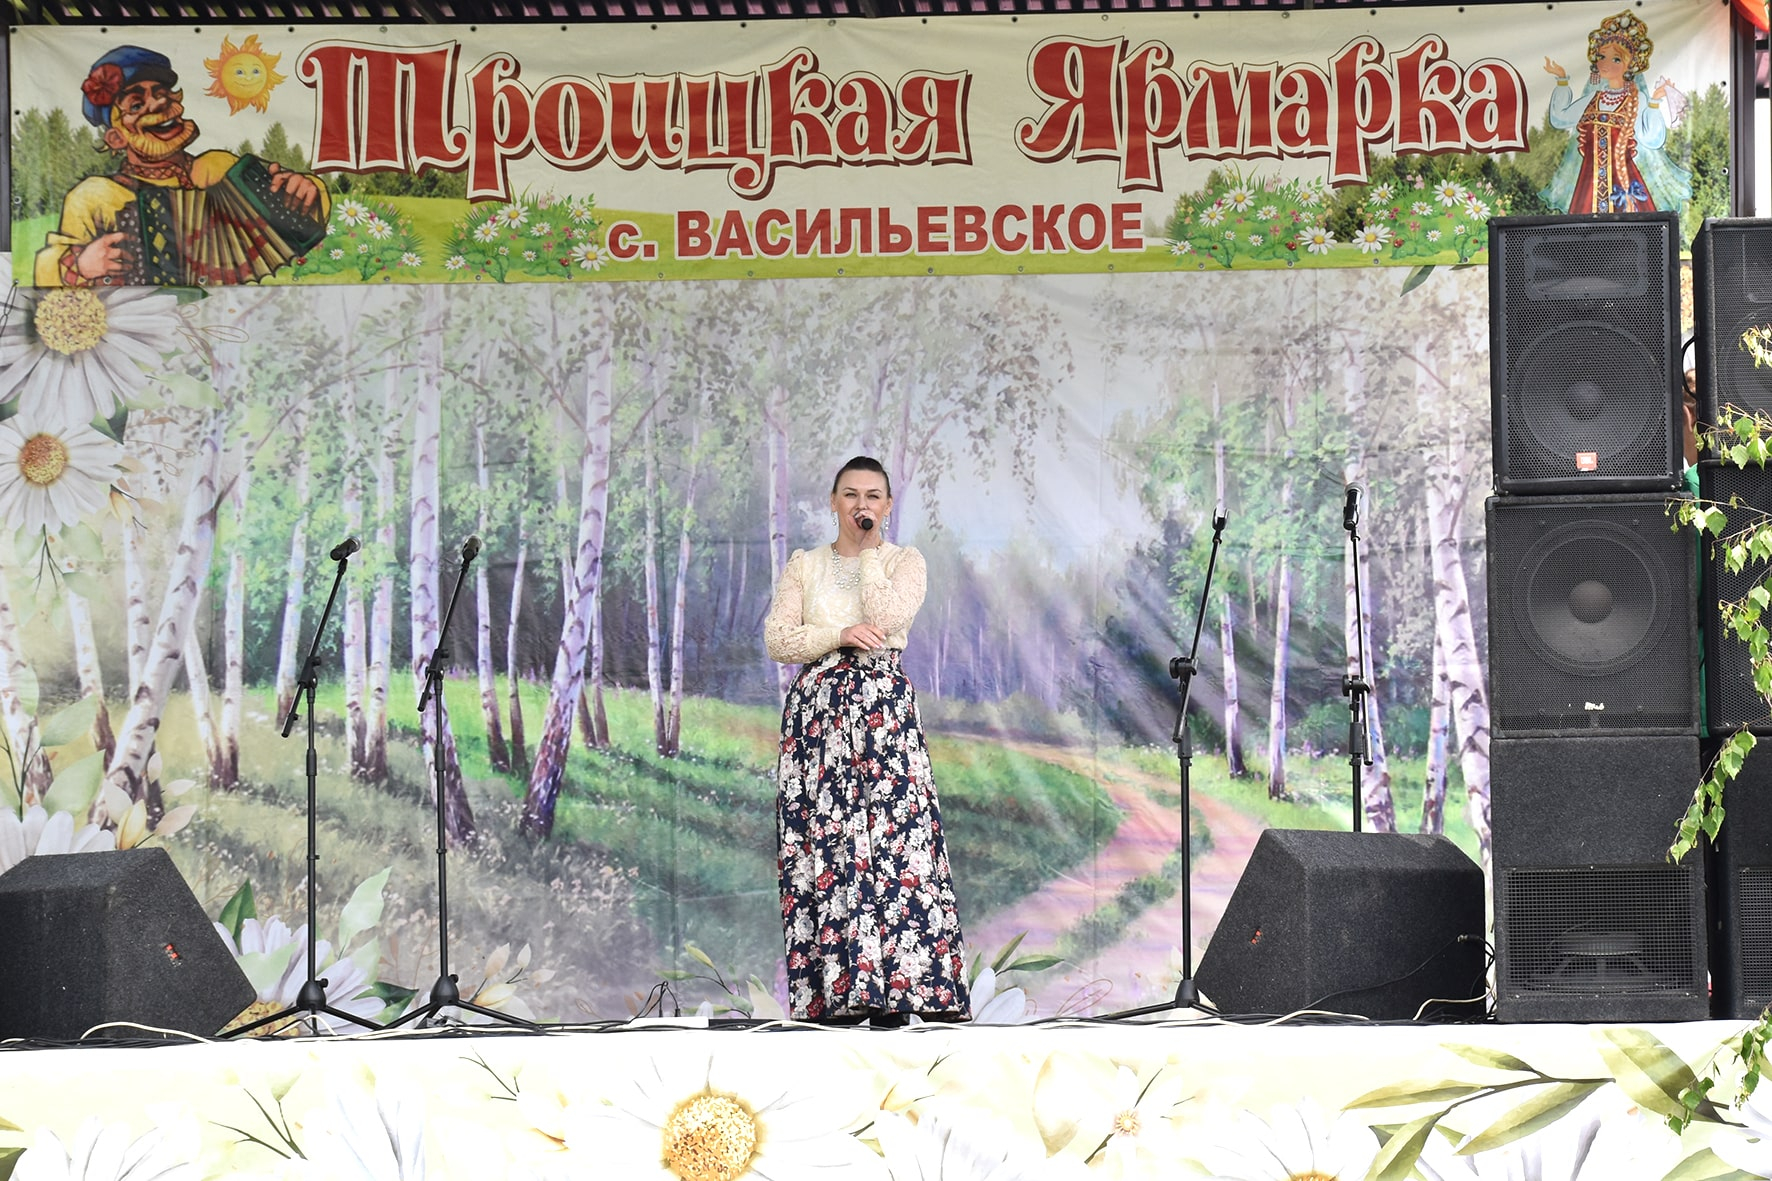 Троицкая ярмарка в селе Васильевском